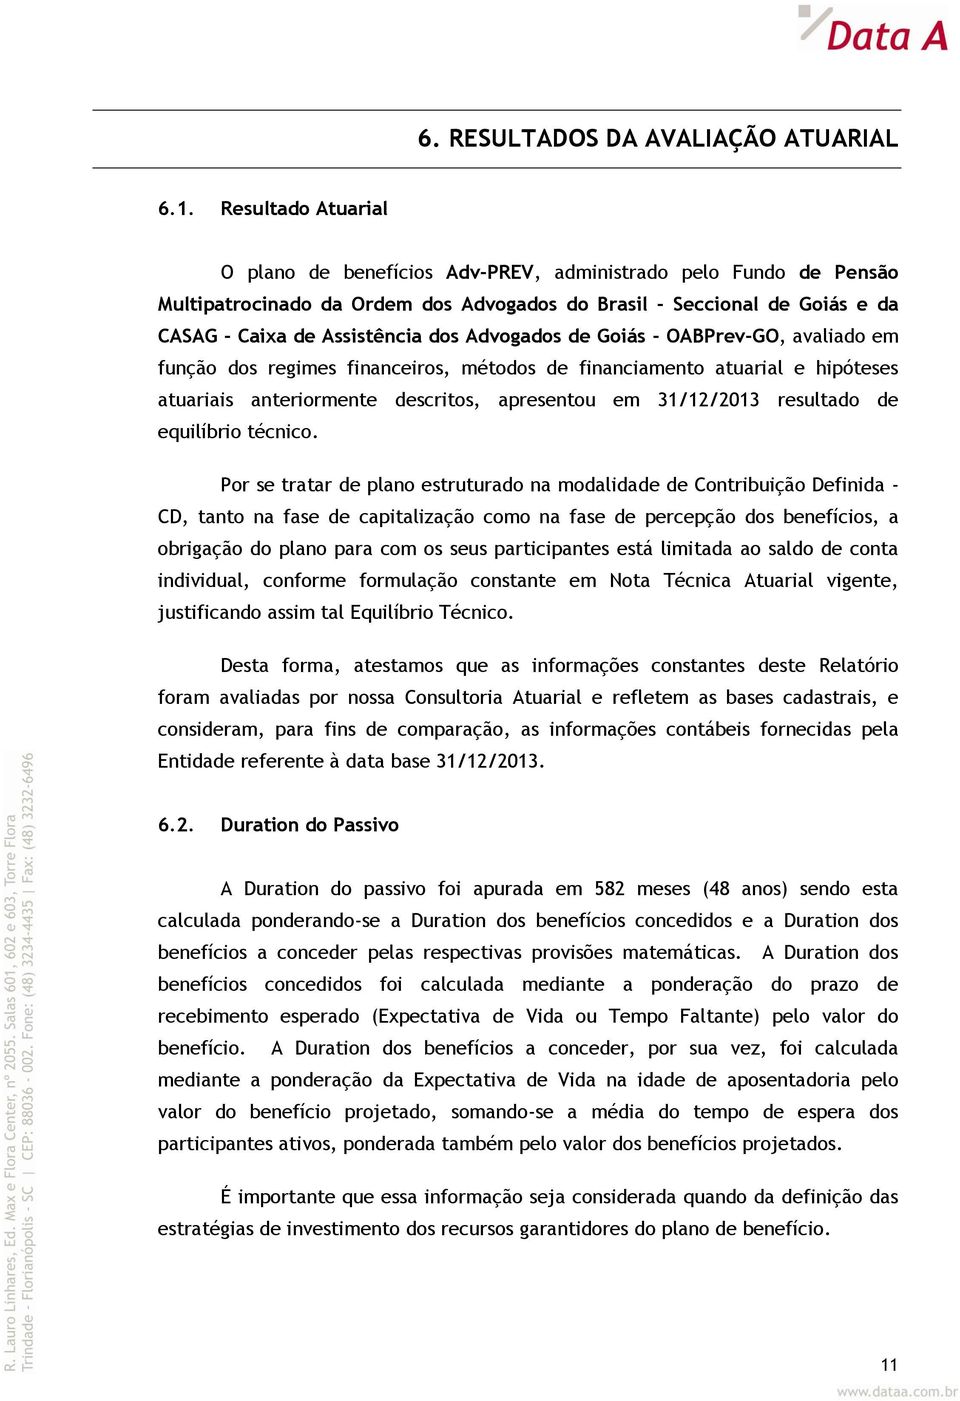 Advogados de Goiás - OABPrev-GO, avaliado em função dos regimes financeiros, métodos de financiamento atuarial e hipóteses atuariais anteriormente descritos, apresentou em 31/12/2013 resultado de